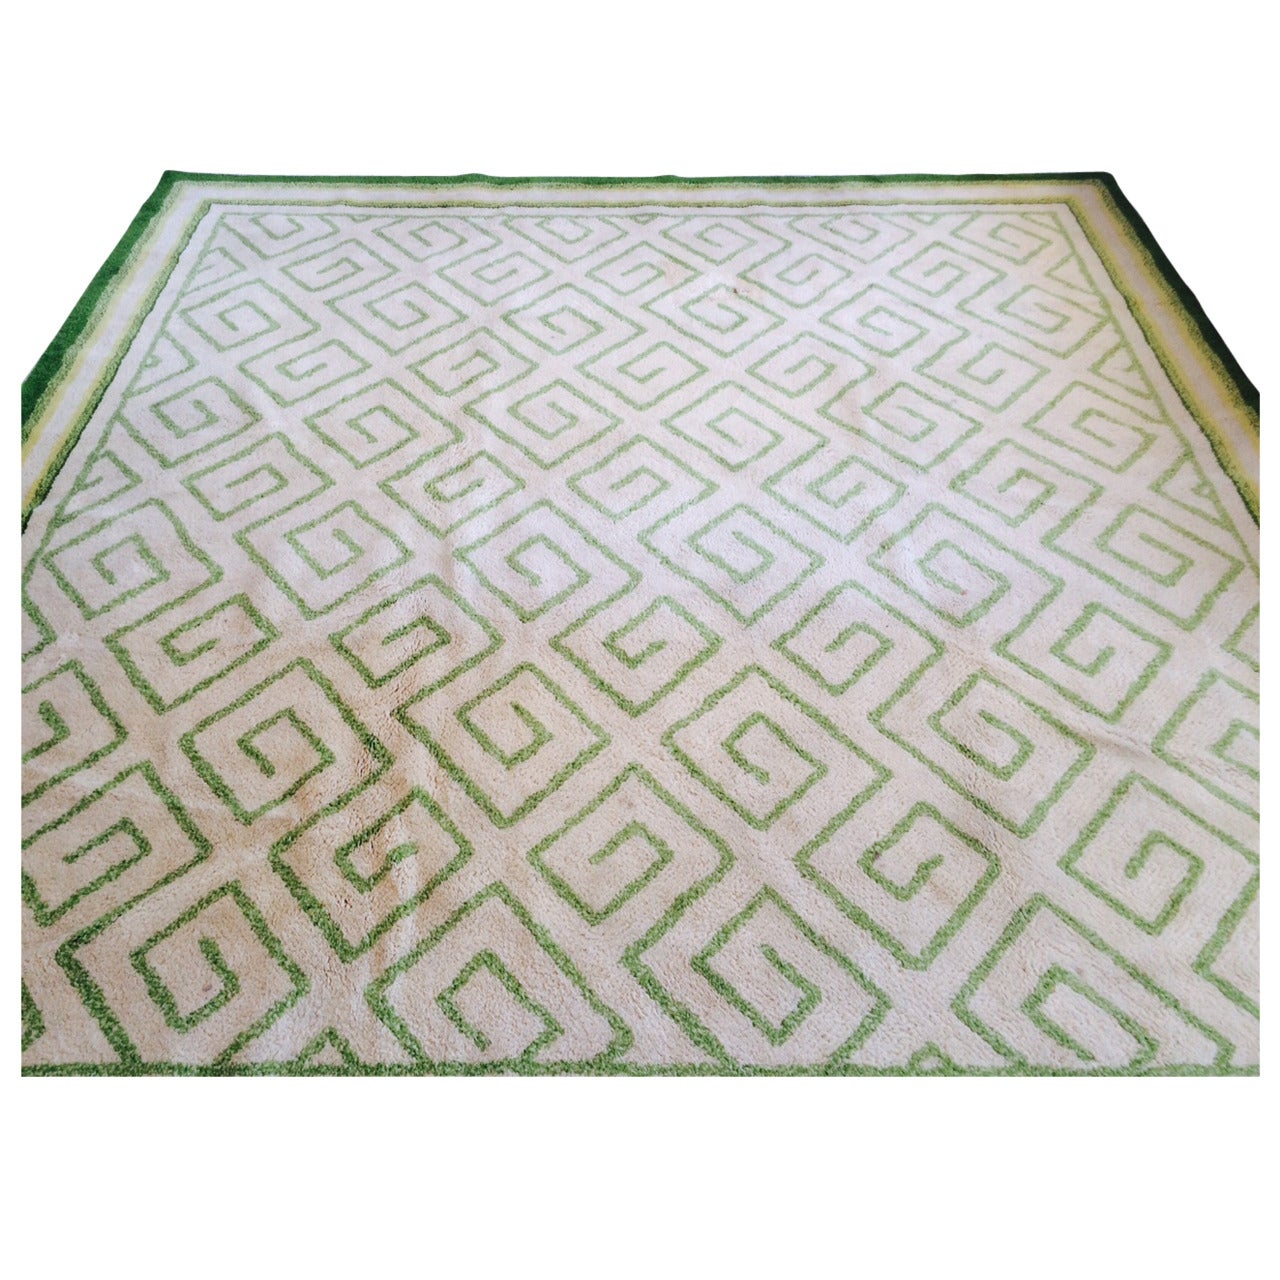 Elegant Greek Key Design Carpet by V'Soske